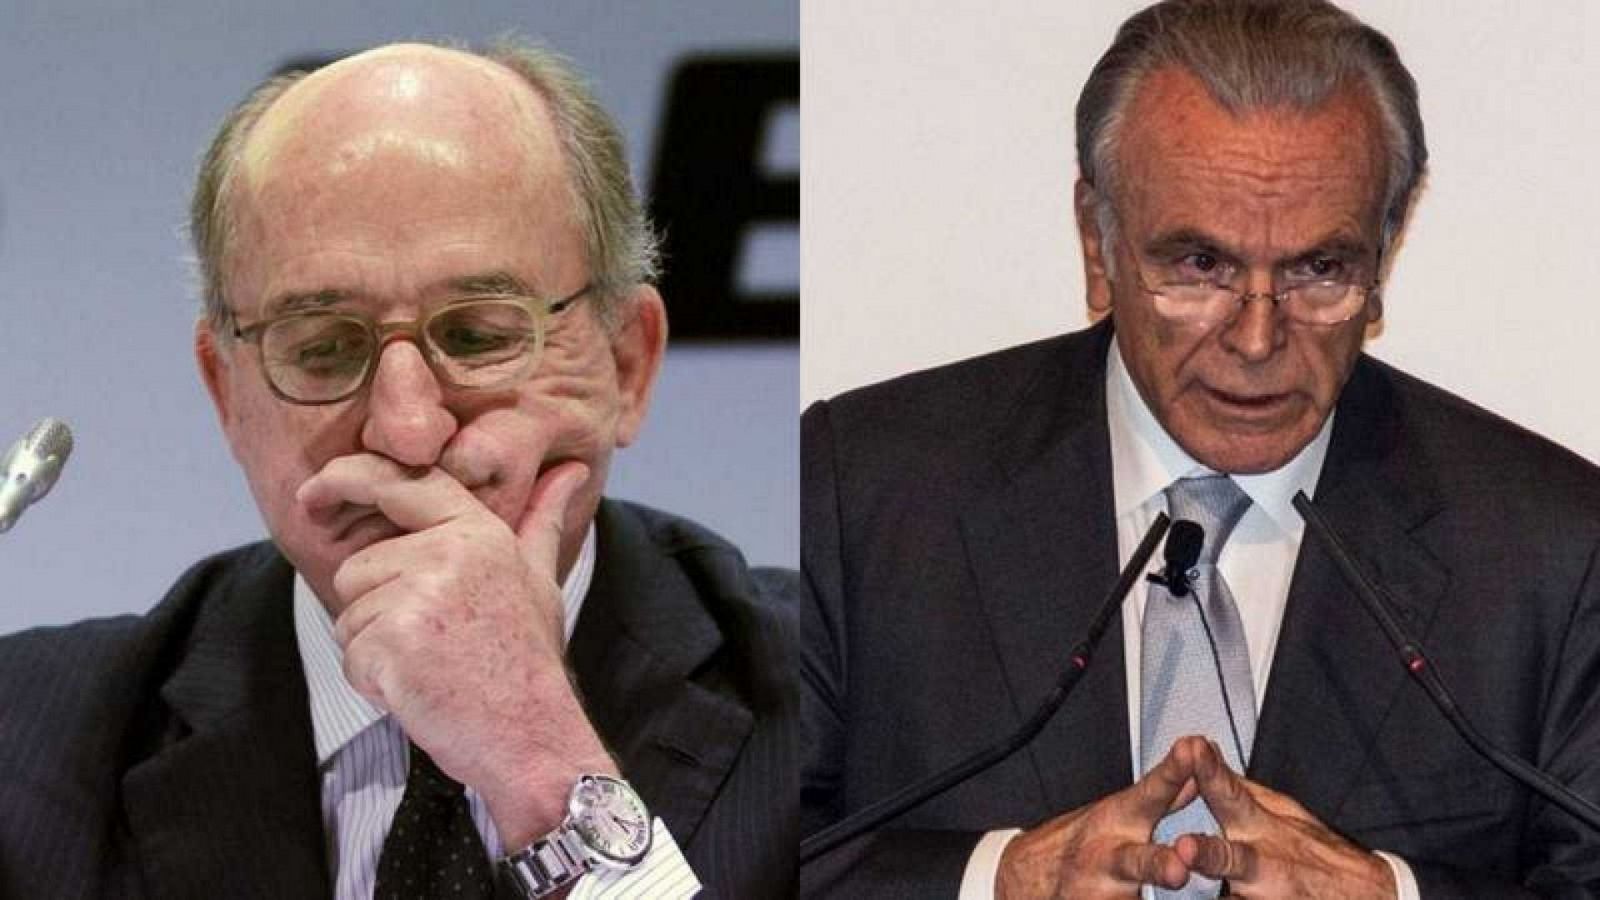 14 horas - El juez imputa a Fainé y Brufau por el espionaje de Villarejo al expresidente de Sacyr - Escuchar ahora